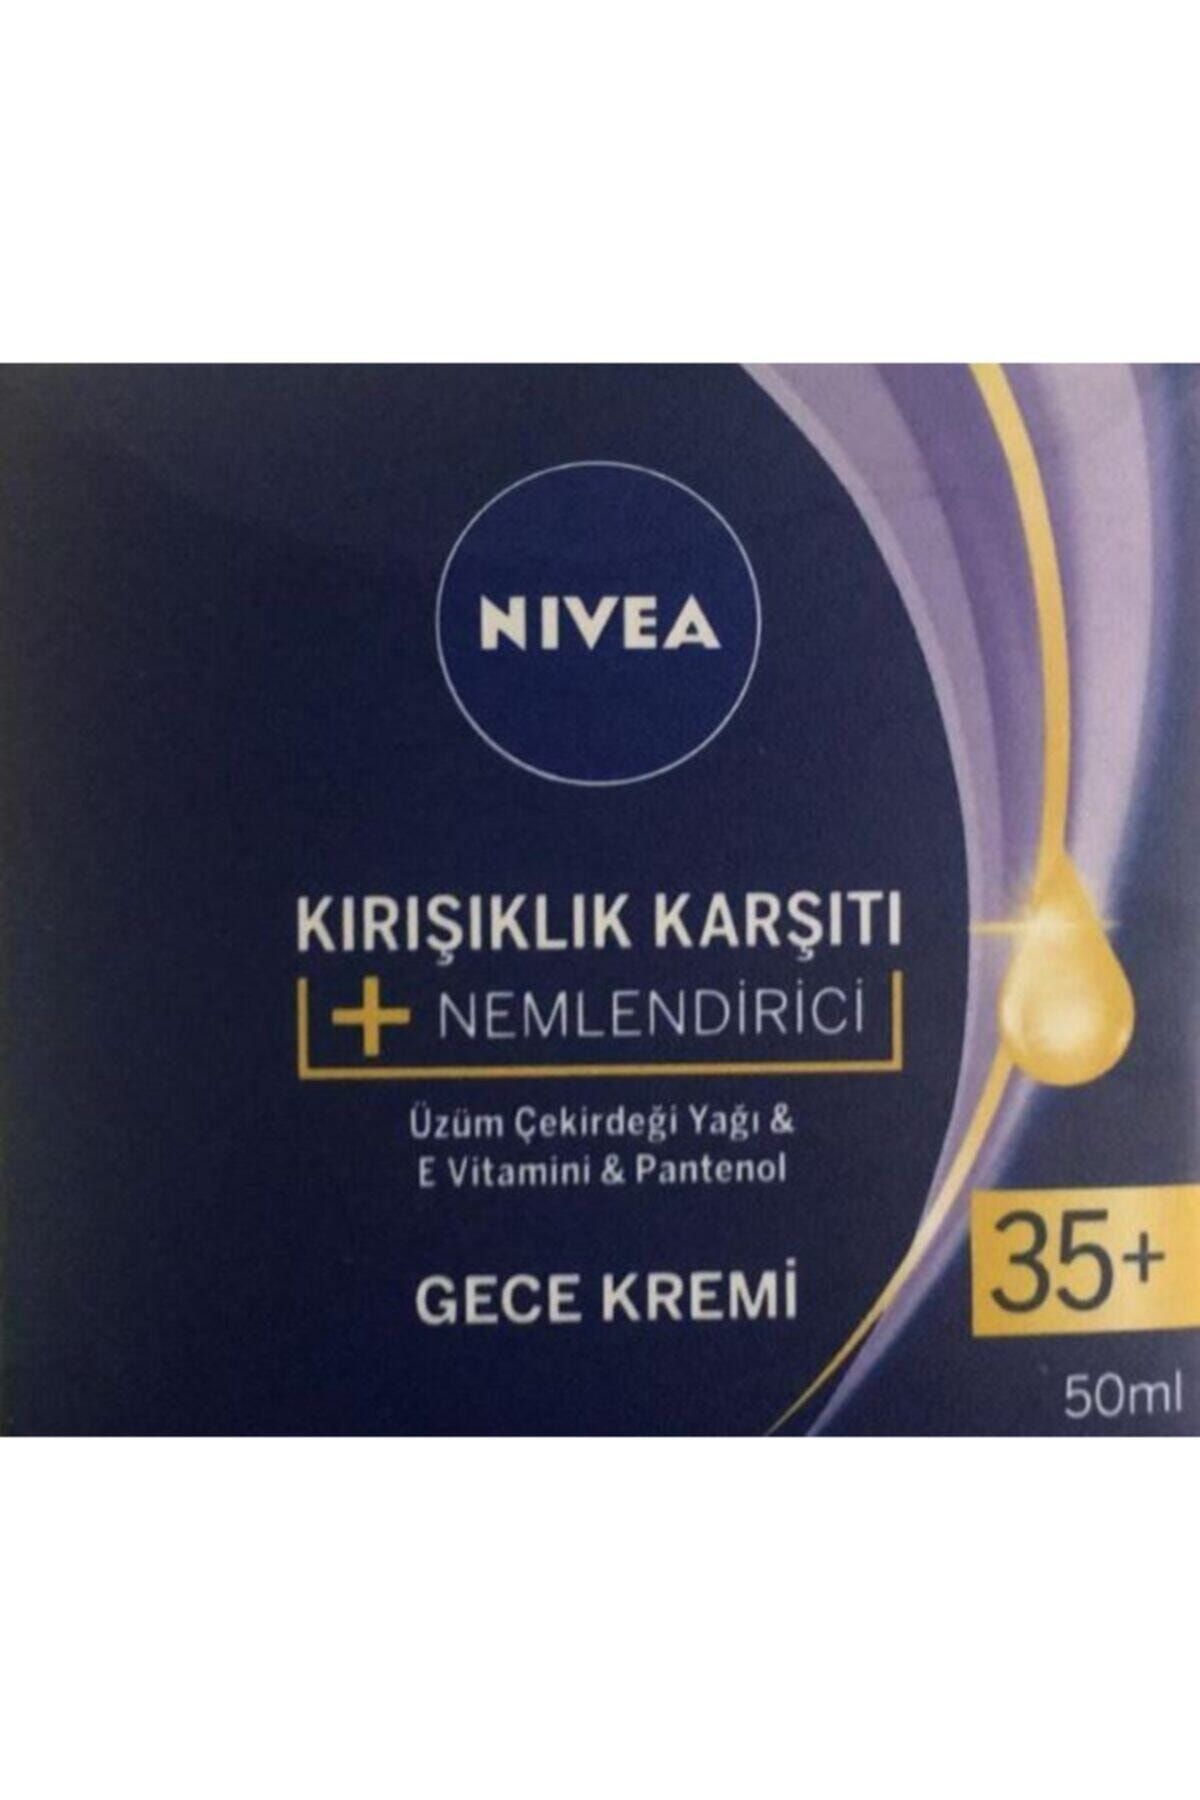 NIVEA Kırışıklık Karşıtı +nemlendirici Gece Kremi/ Üzüm Çekirdeği Yağı&e Vitamini &pantenol 50ml 35+